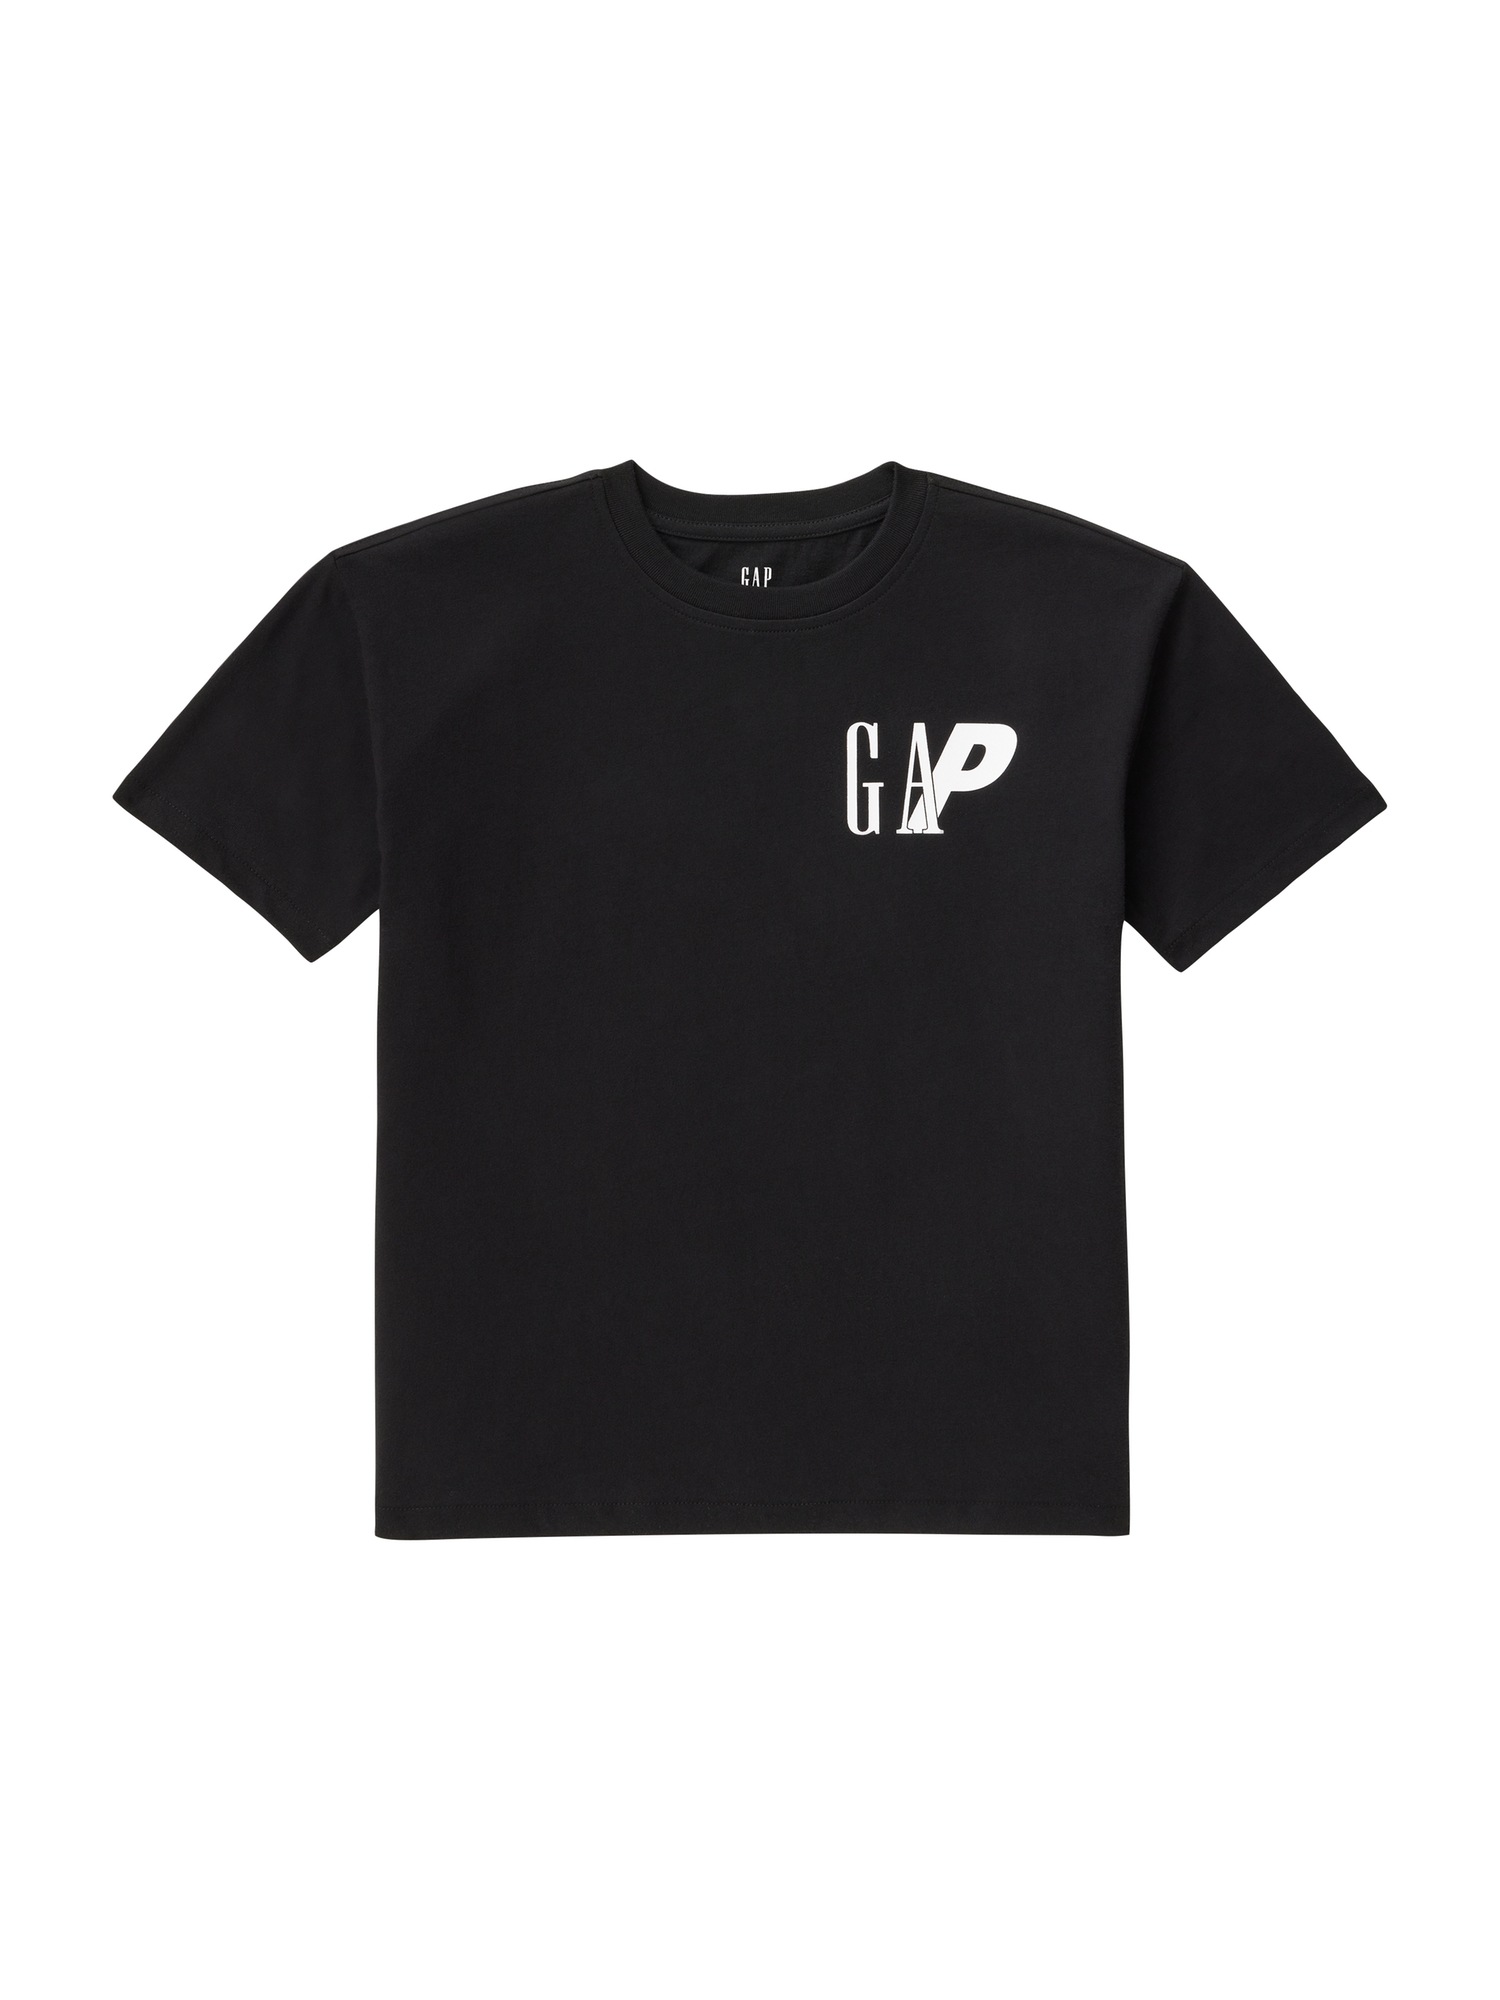 Palace Gap Kids T-Shirt | Gap